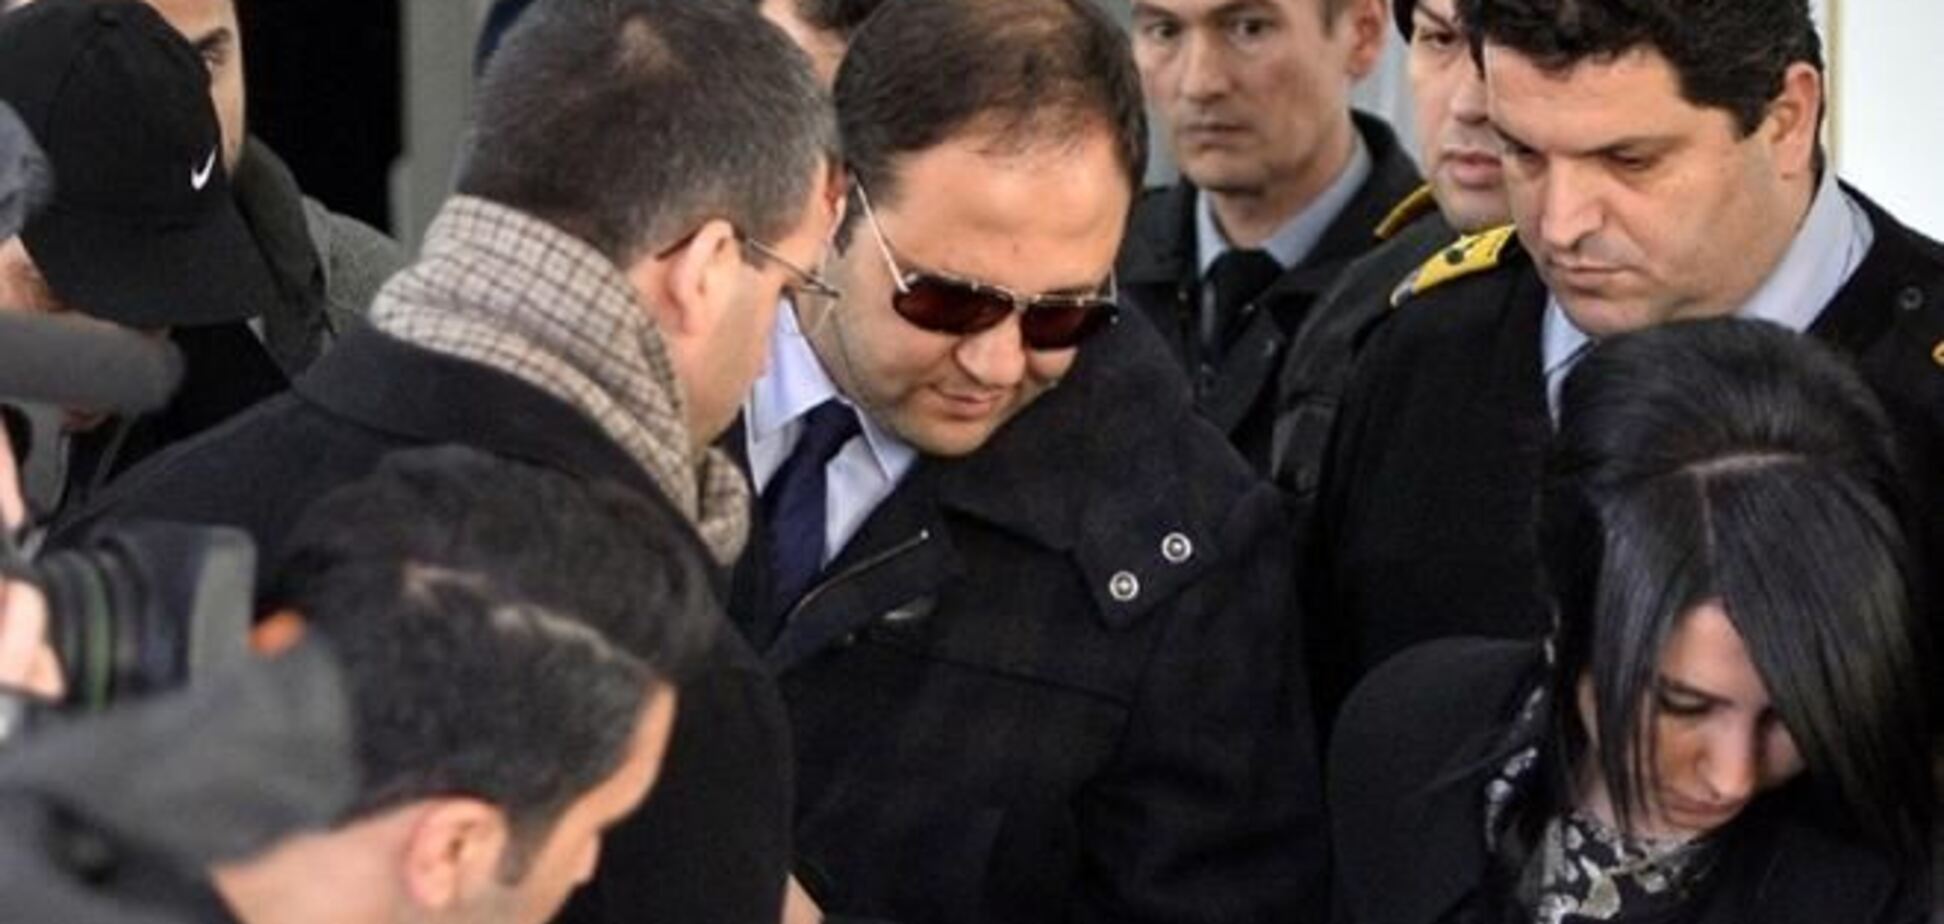 Турция в 'шоке': за коррупцию арестованы сыновья министров и высокопоставленные чиновники